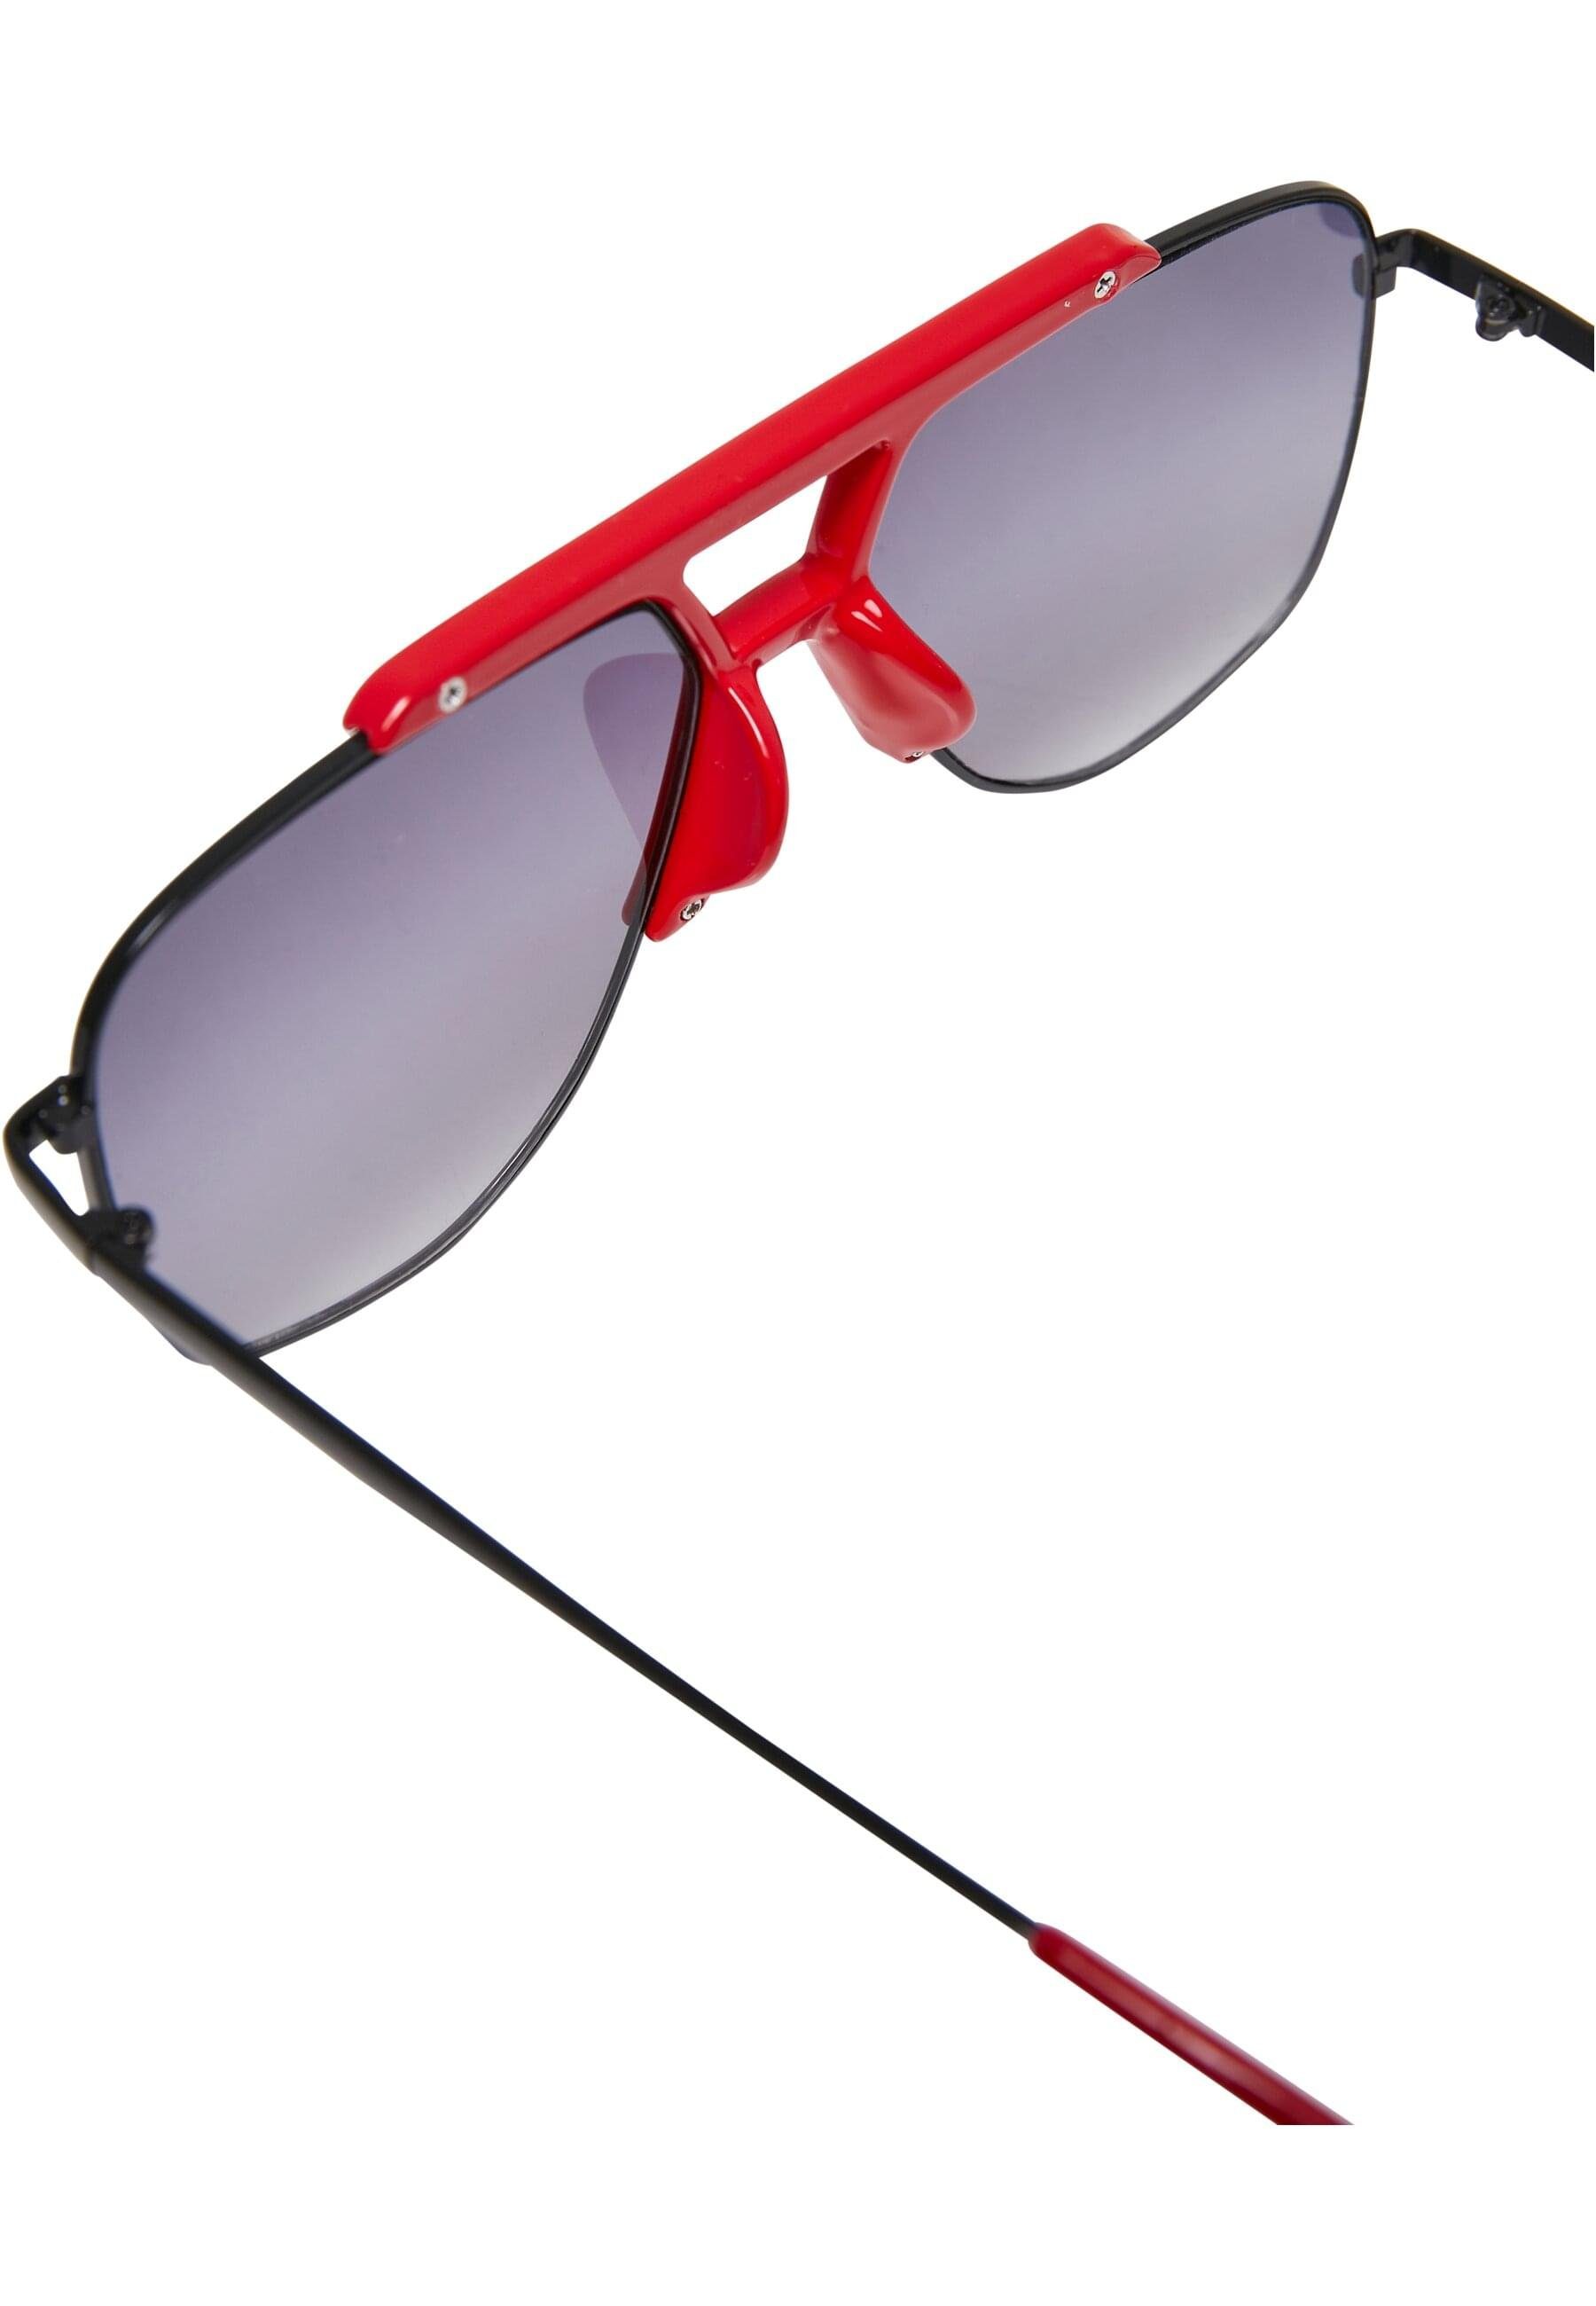 URBAN CLASSICS Sonnenbrille Unisex Saint Tropez hugered/black Sunglasses